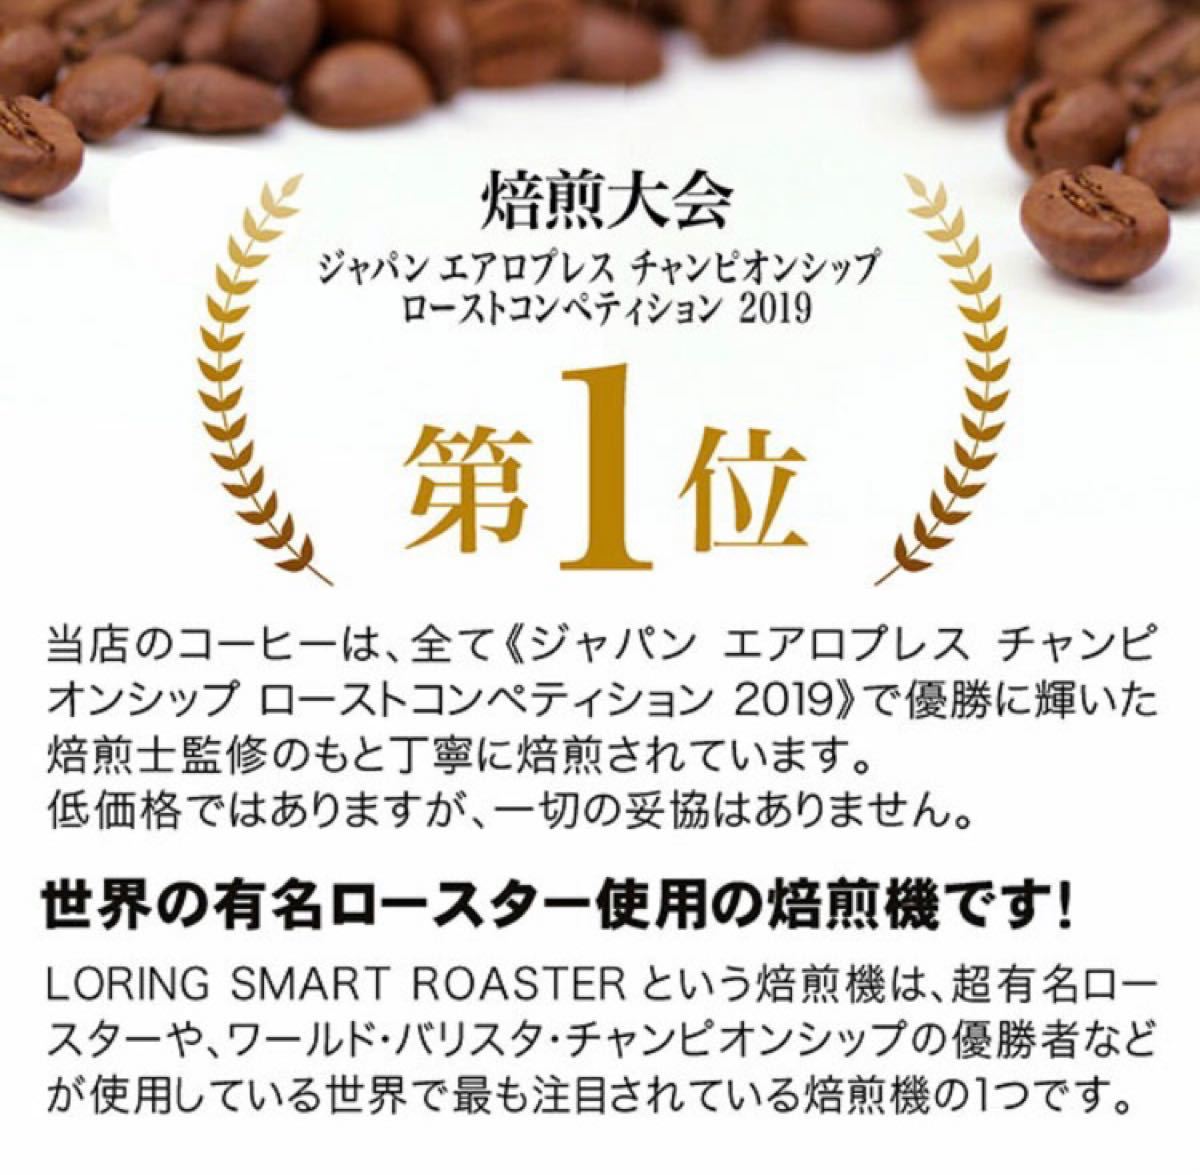 ドリップコーヒーファクトリー プレミアム クラッシックブレンド レギュラーコーヒー 500g×2袋 計1kg コーヒー豆 中挽き